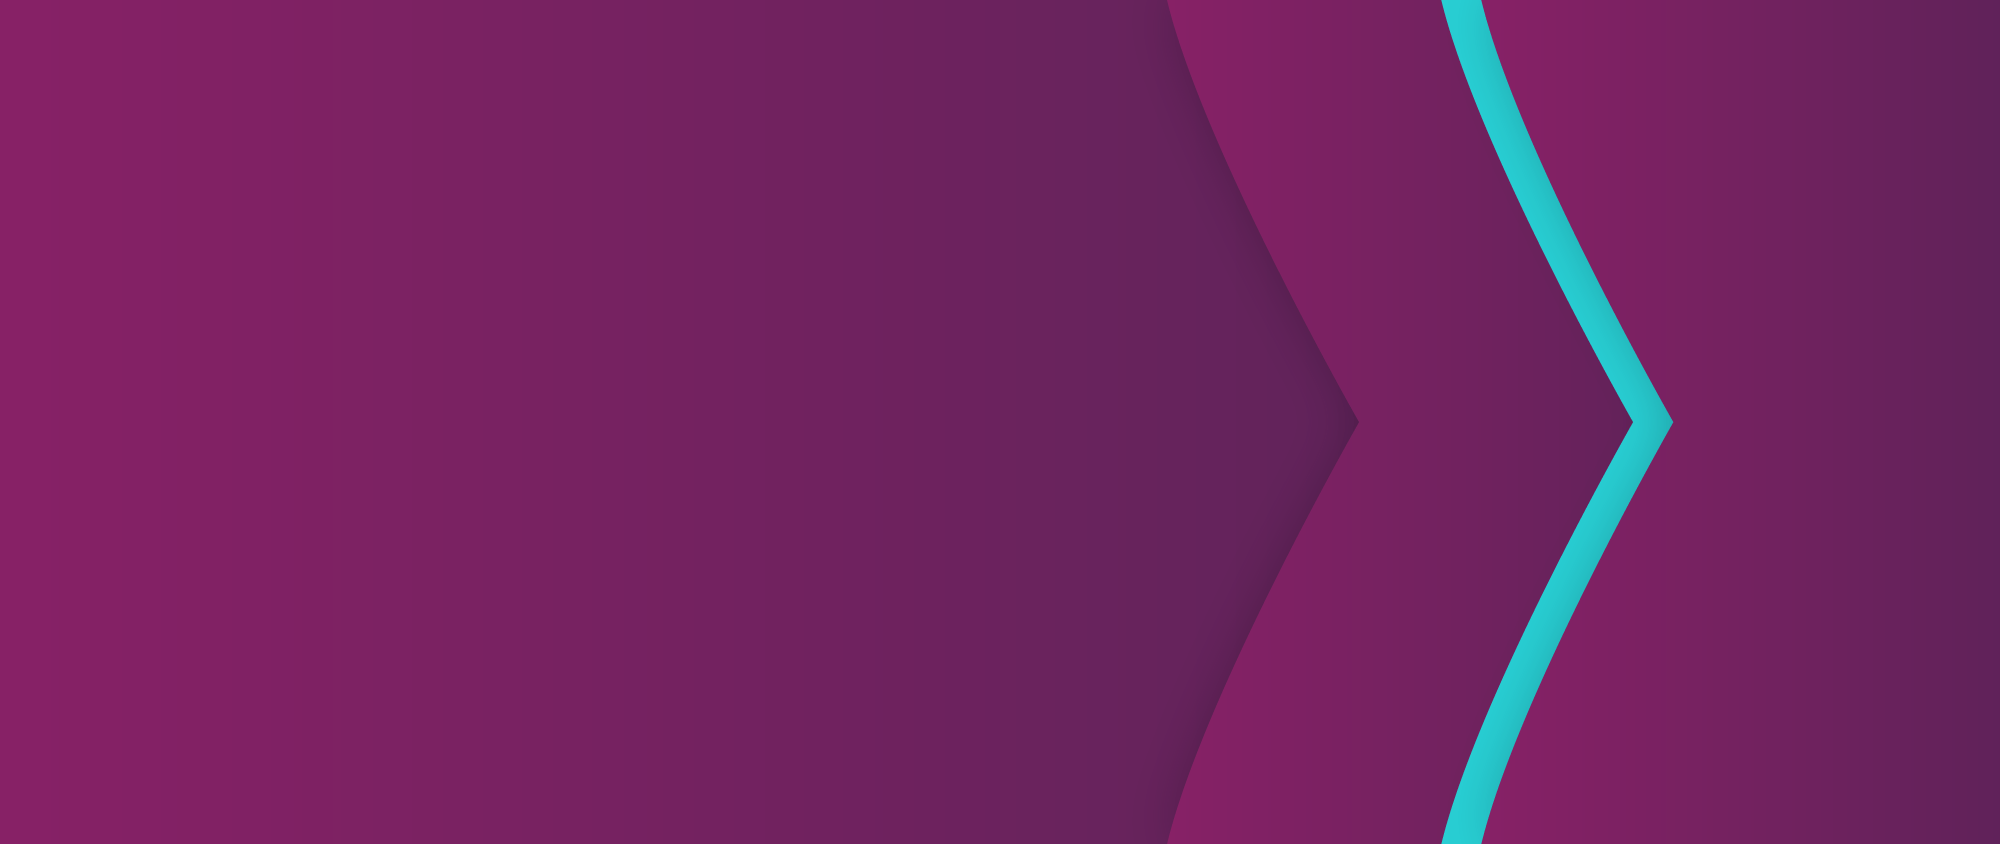 Skrill-Marke, Hintergrund mit lila und türkisfarbigen Pfeilen